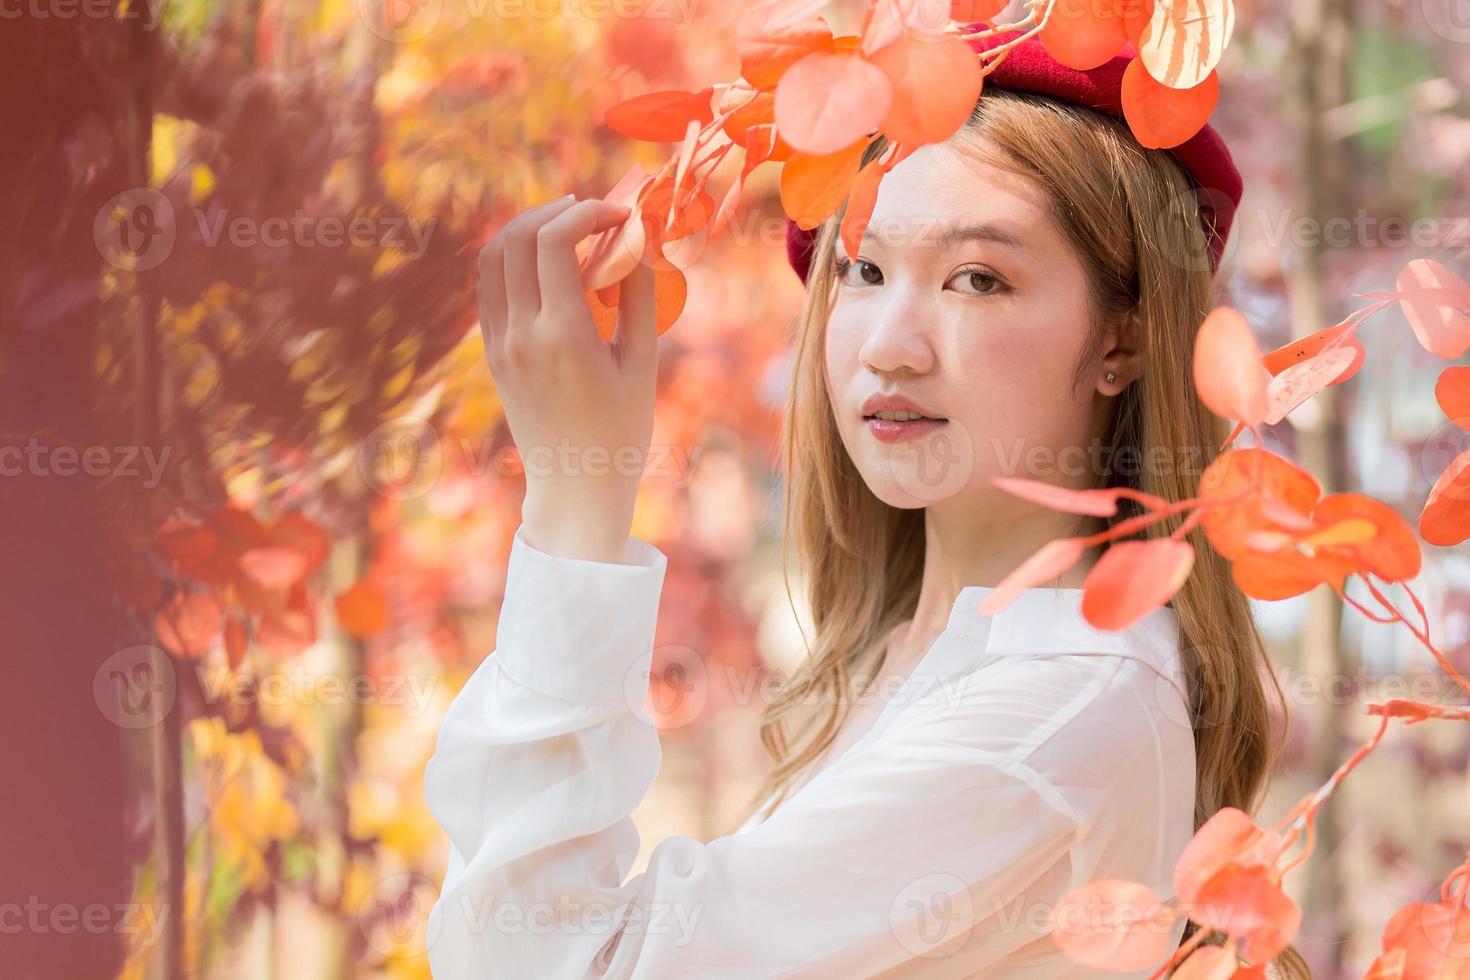 mujer asiática que usa camisa blanca y gorra roja se para en rojo-naranja como bosque en otoño. foto